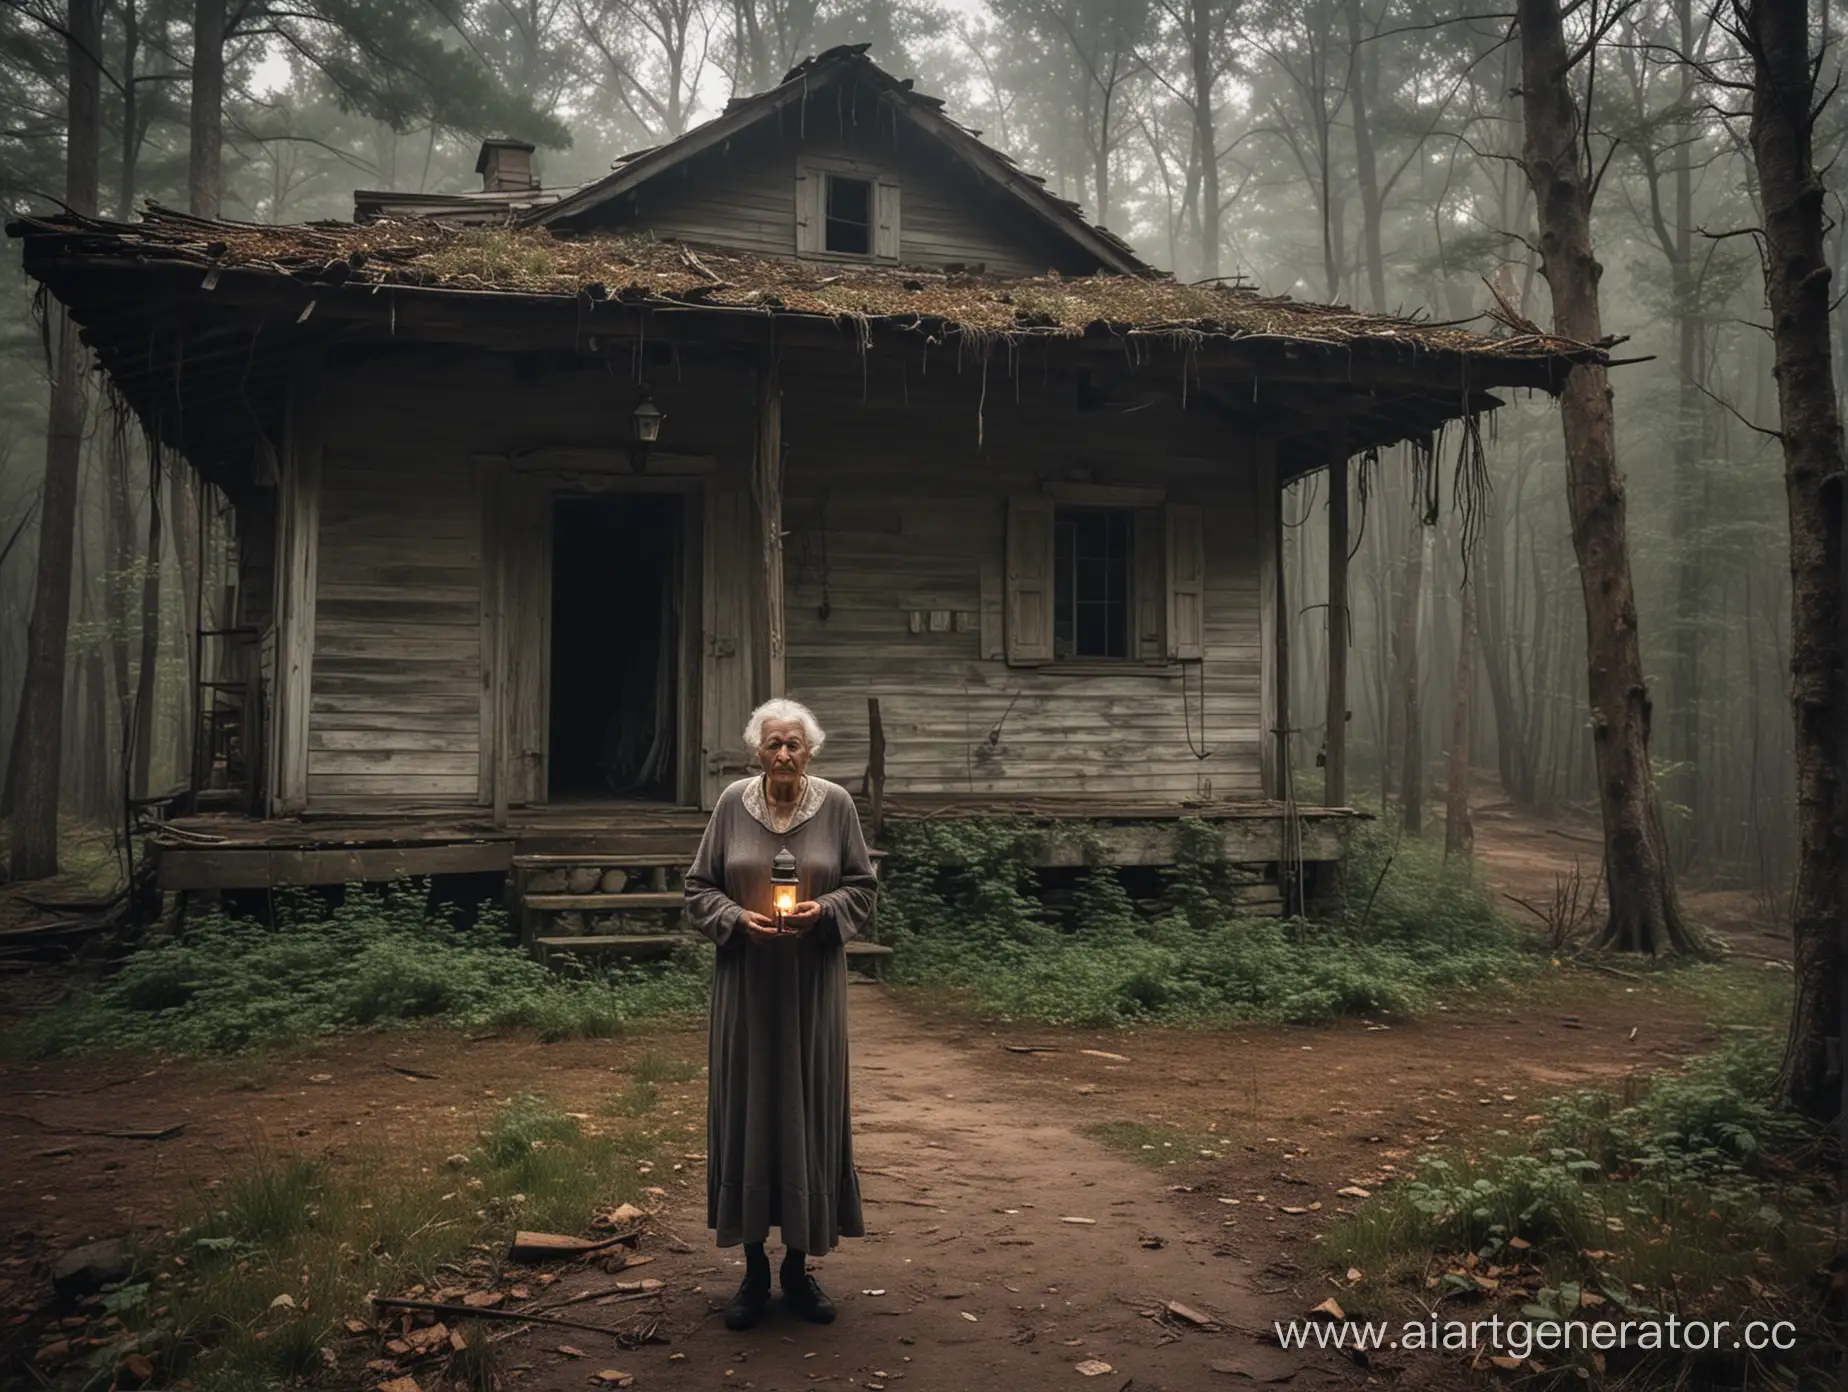 старый заброшенный дом в лесу, где при входе стоит высокая и страшная бабуля, с лампой в руках
